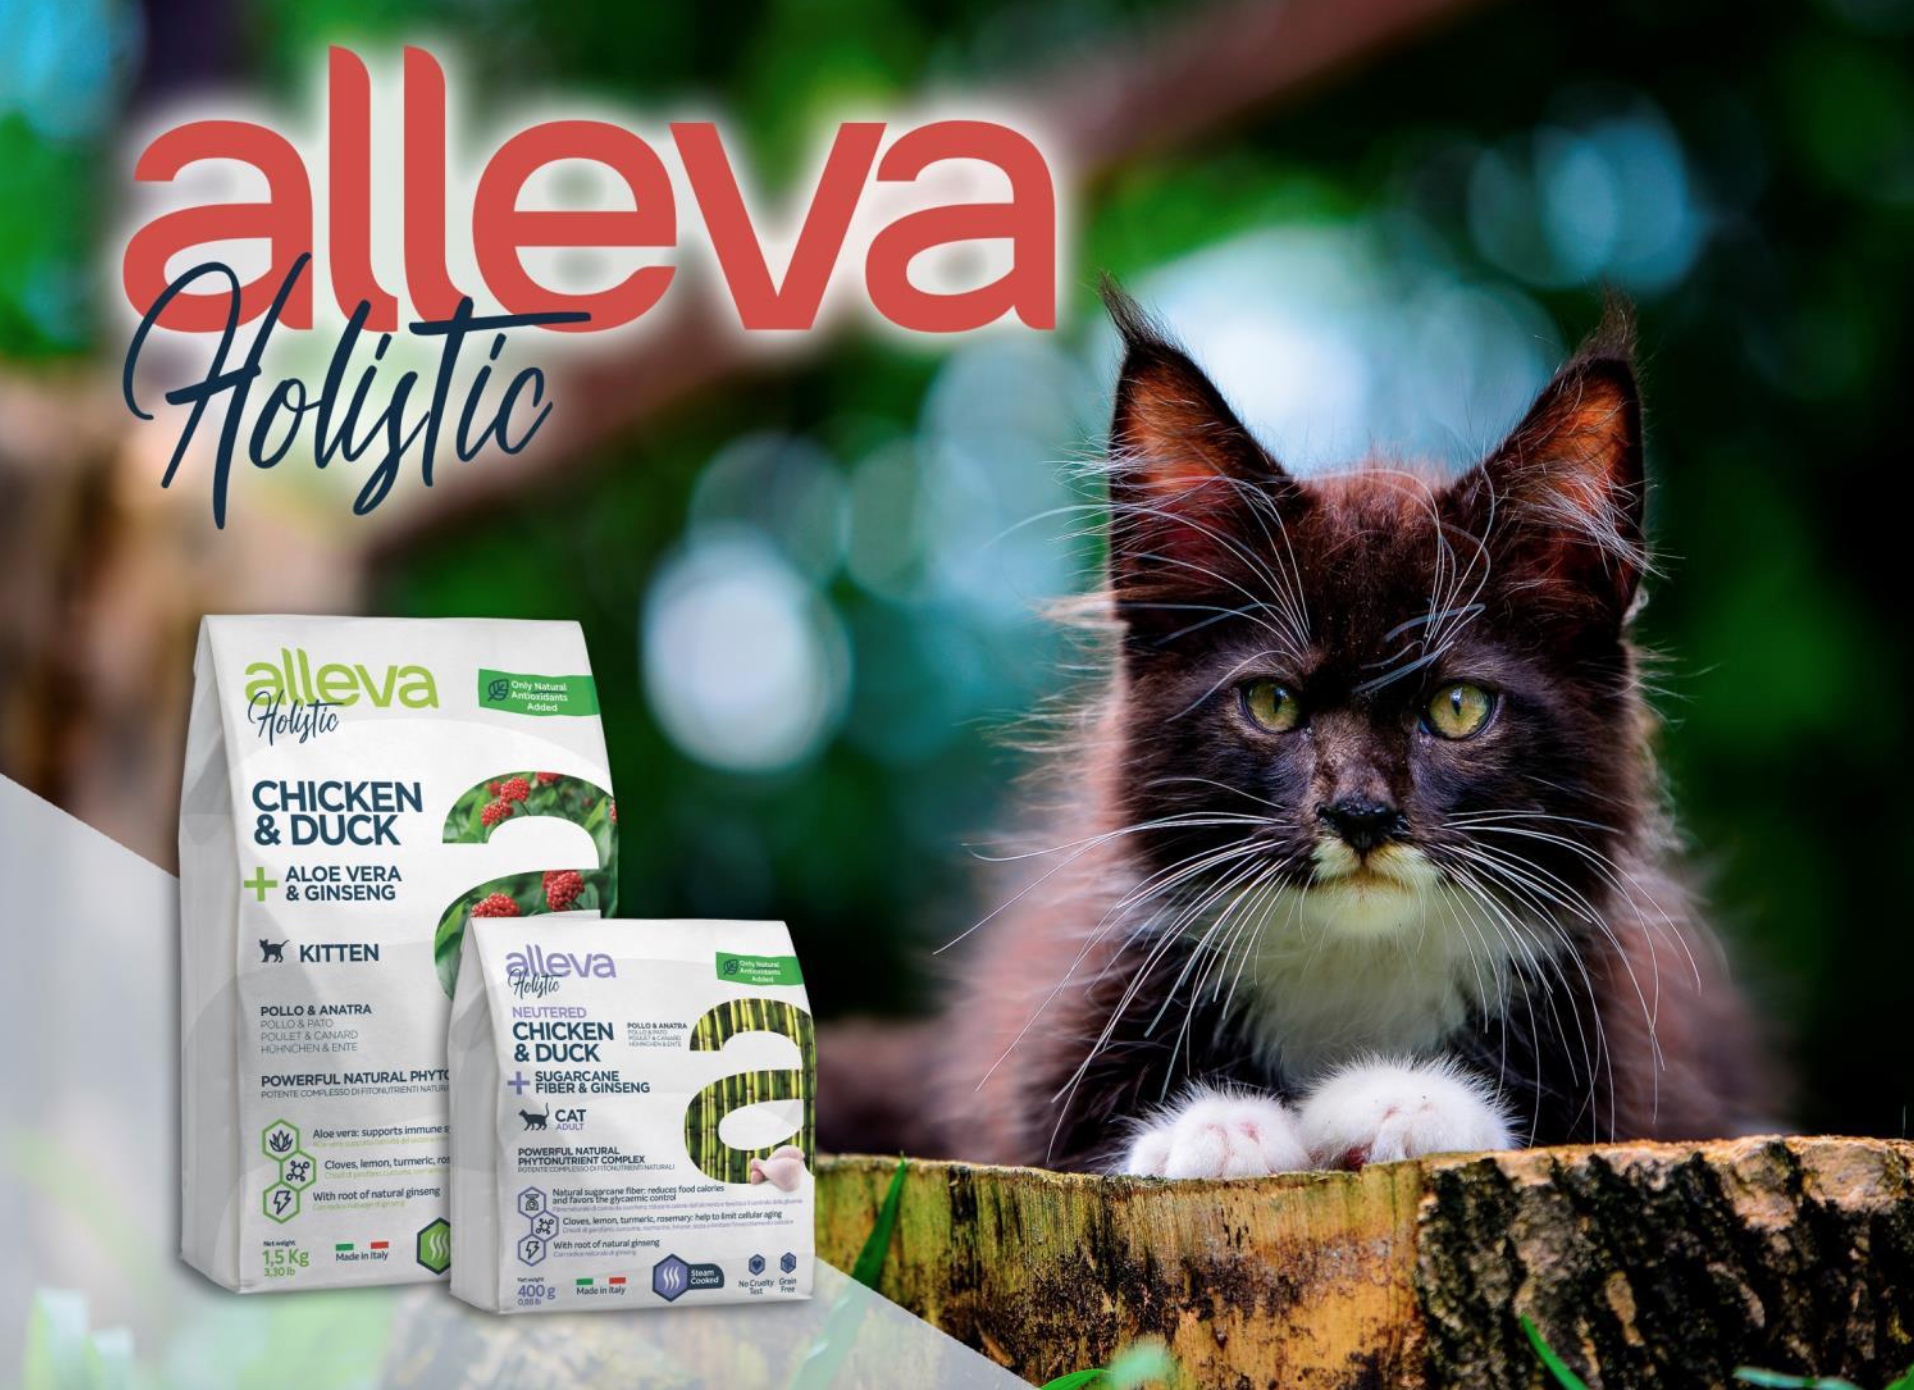 купить Сухой корм Alleva Holistic для кошек (Италия) с бесплатной доставкой в Калининграде